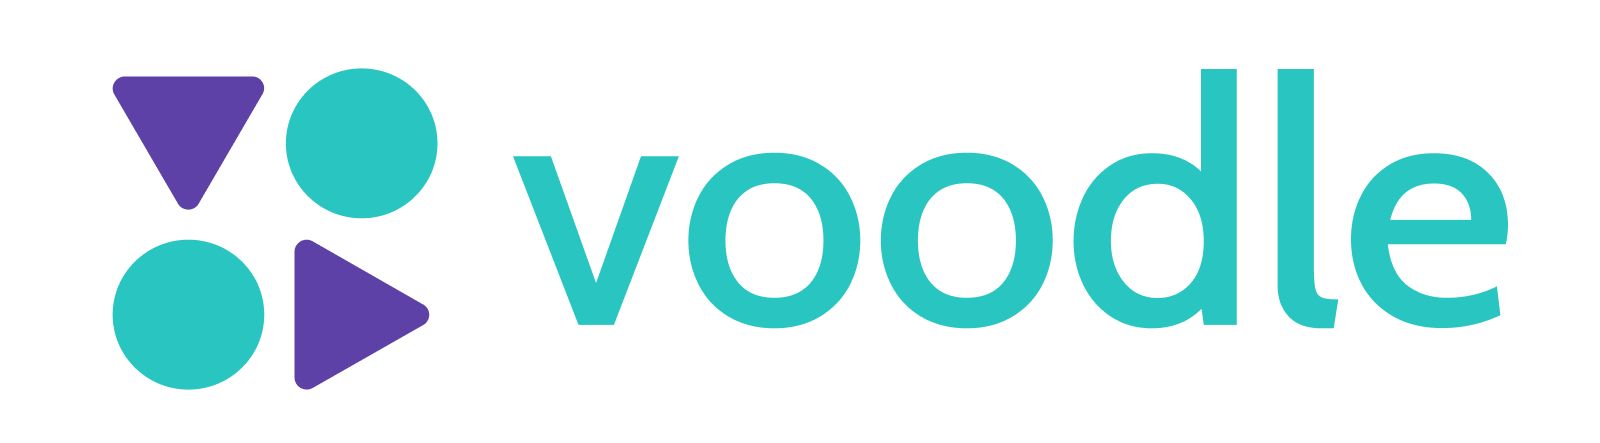 Voodle - Logo